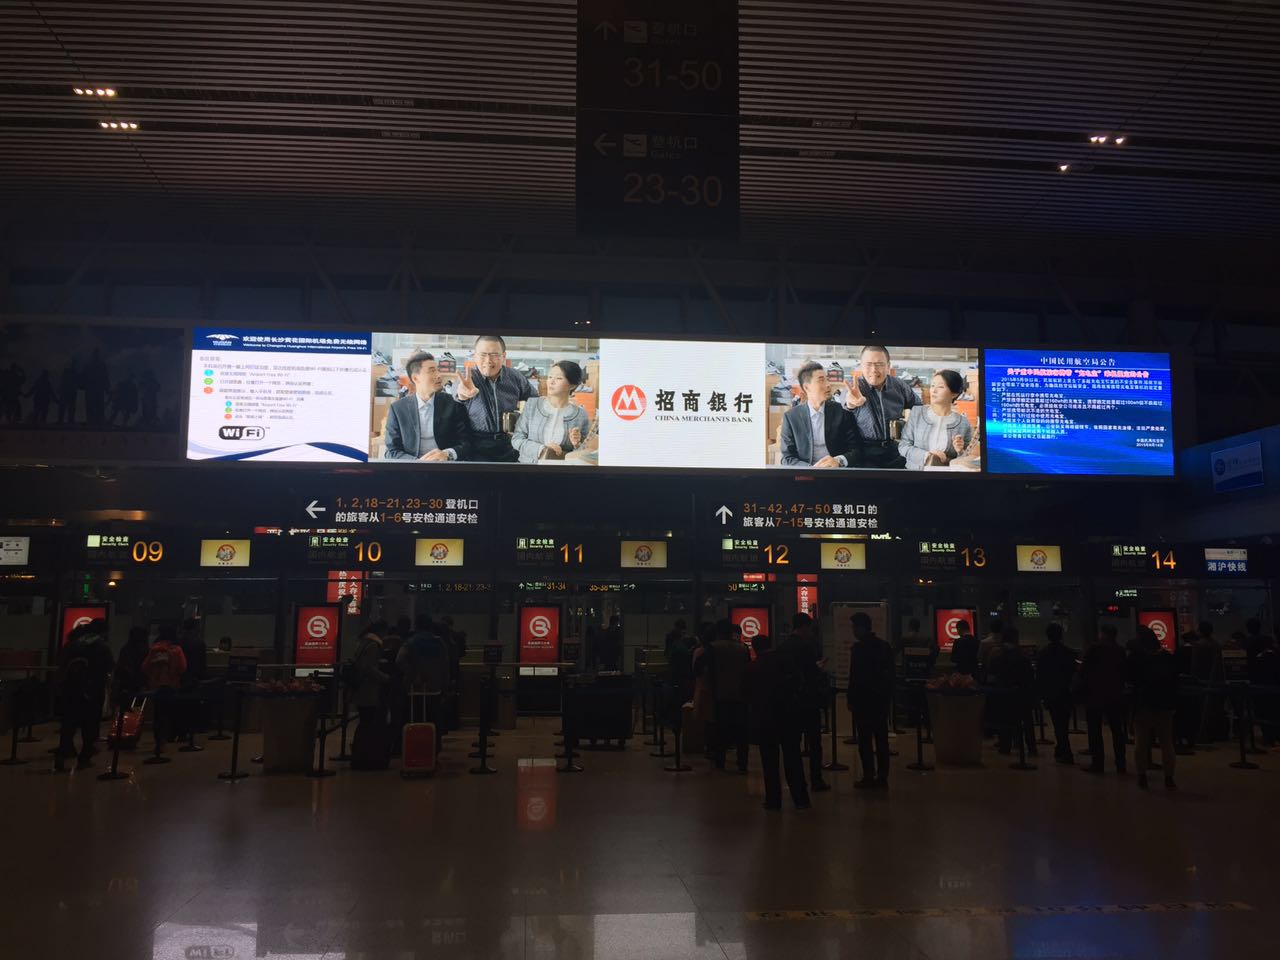 2016年长沙机场LED大屏广告批发